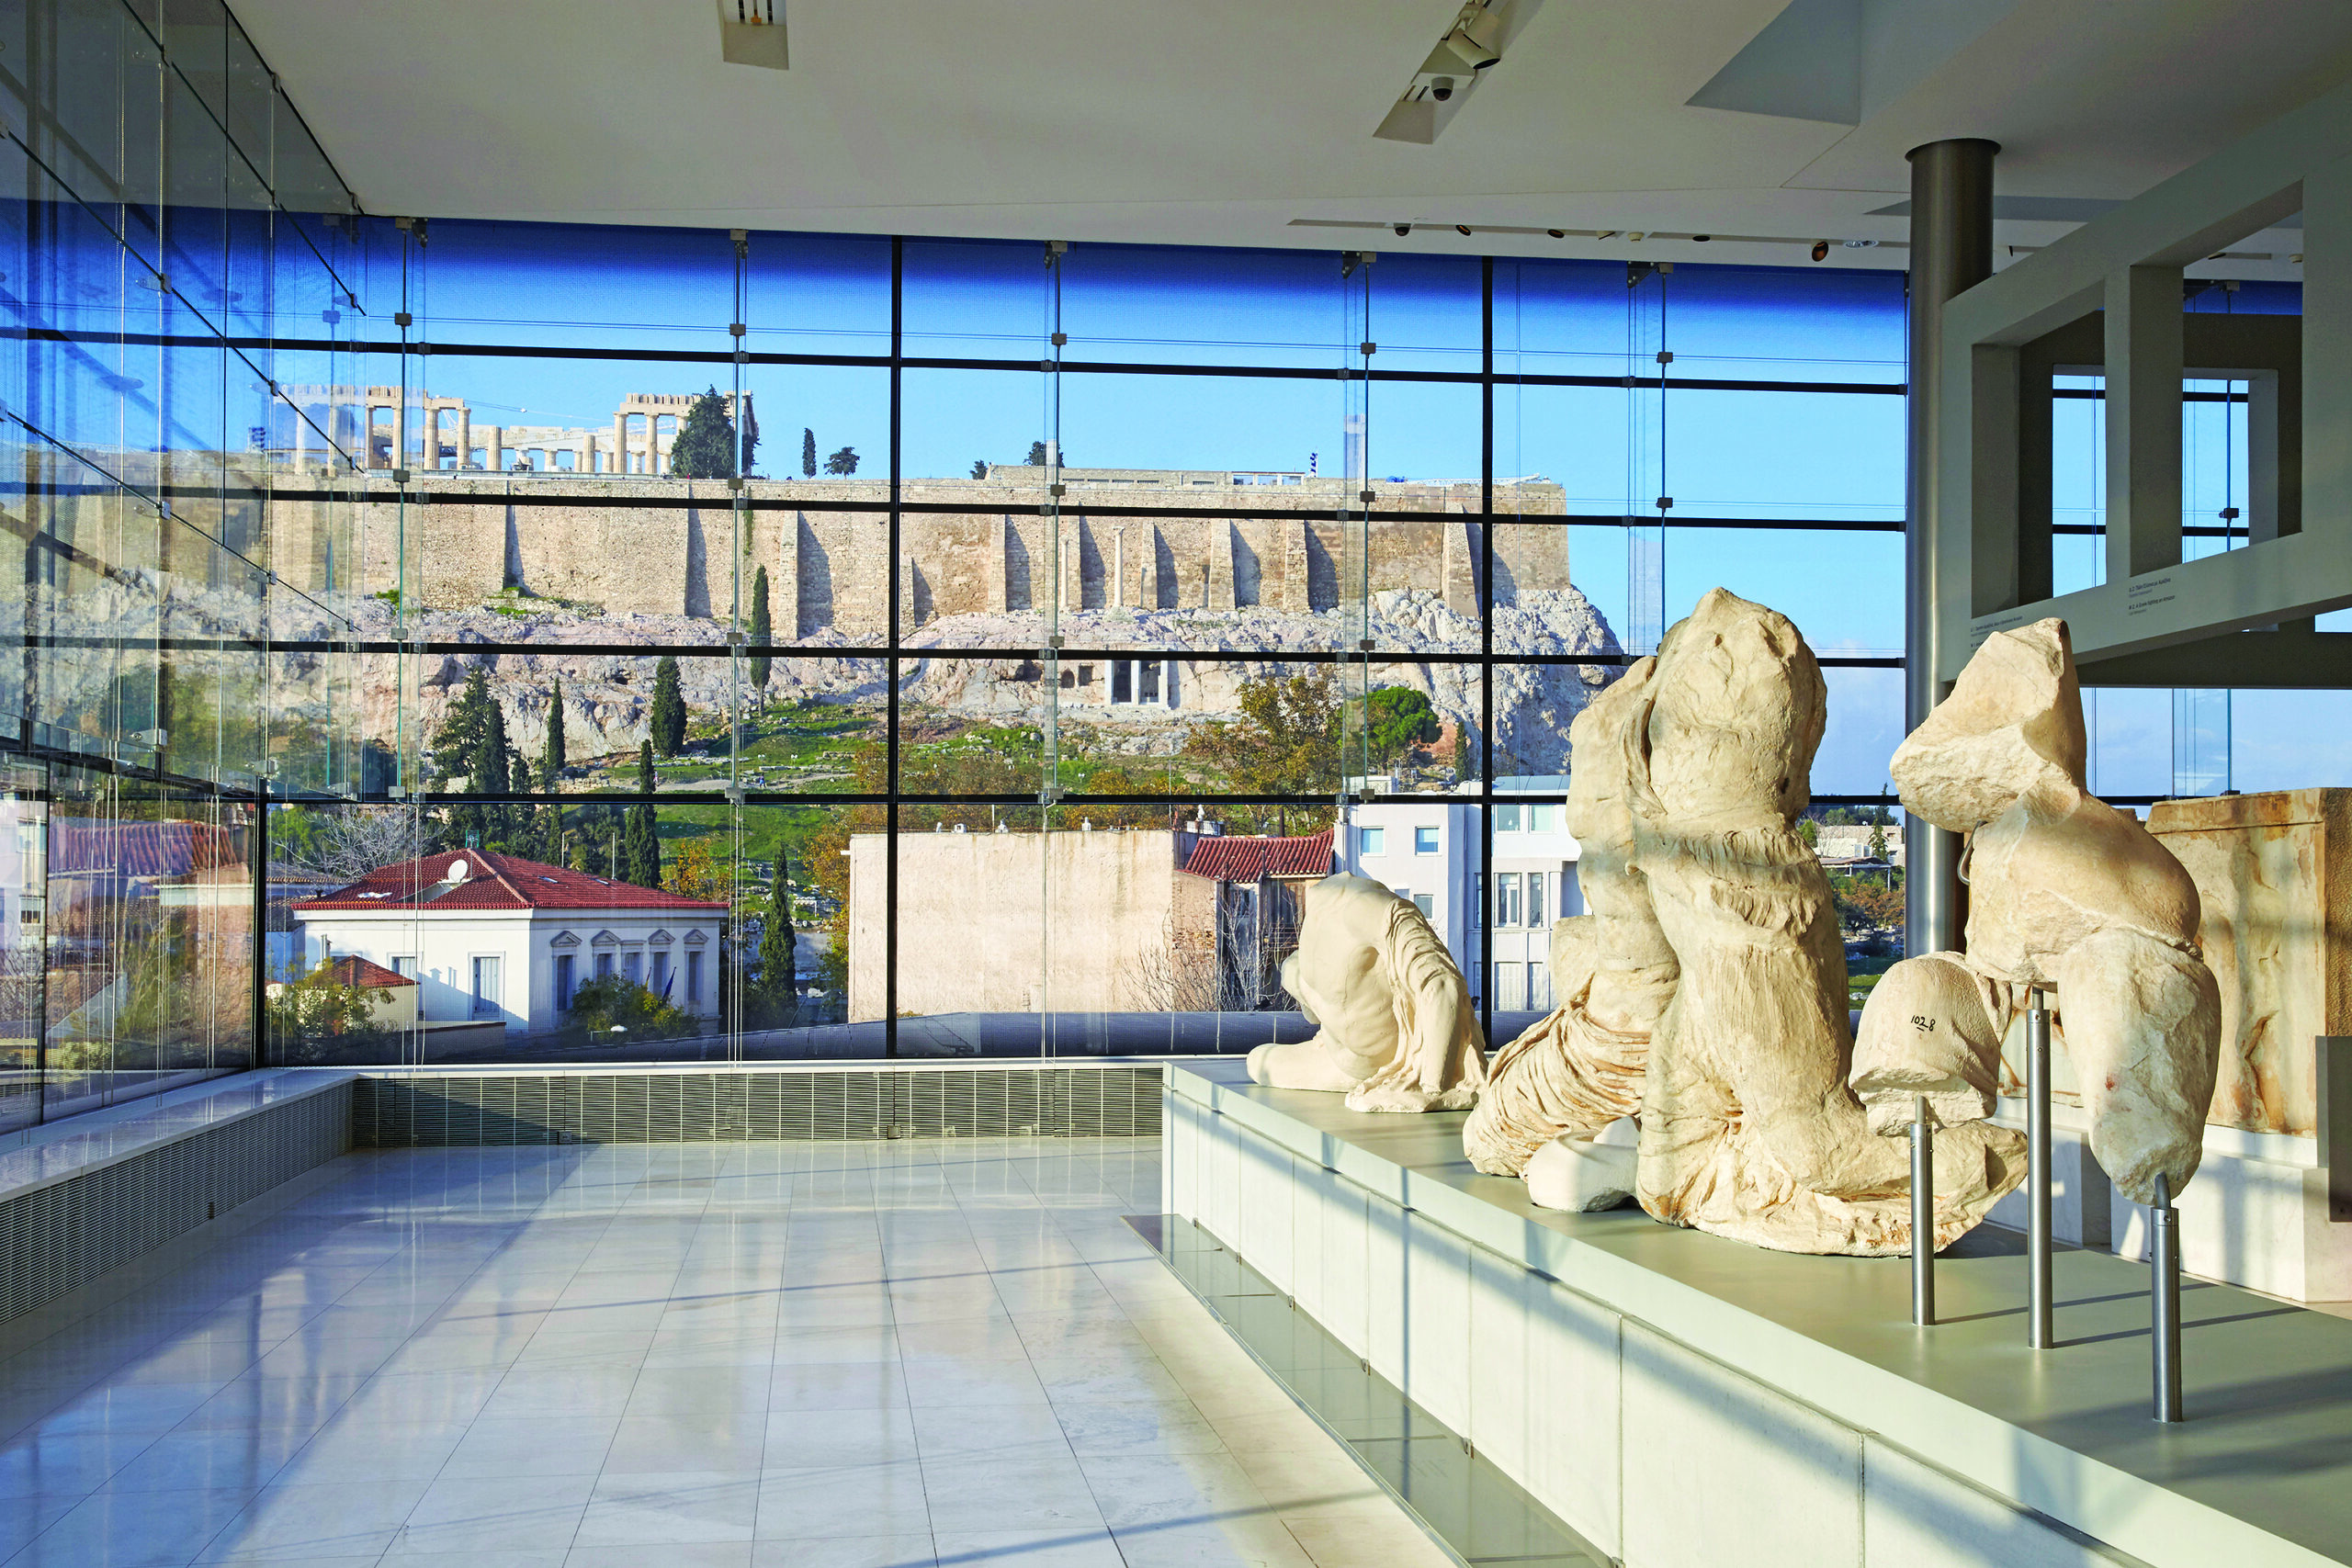 Το Μουσείο Ακρόπολης απαντά στον Σούνακ: Πολιτισμός δεν είναι μόνον οι αρχαιότητες, αλλά και οι συμπεριφορές των ανθρώπων